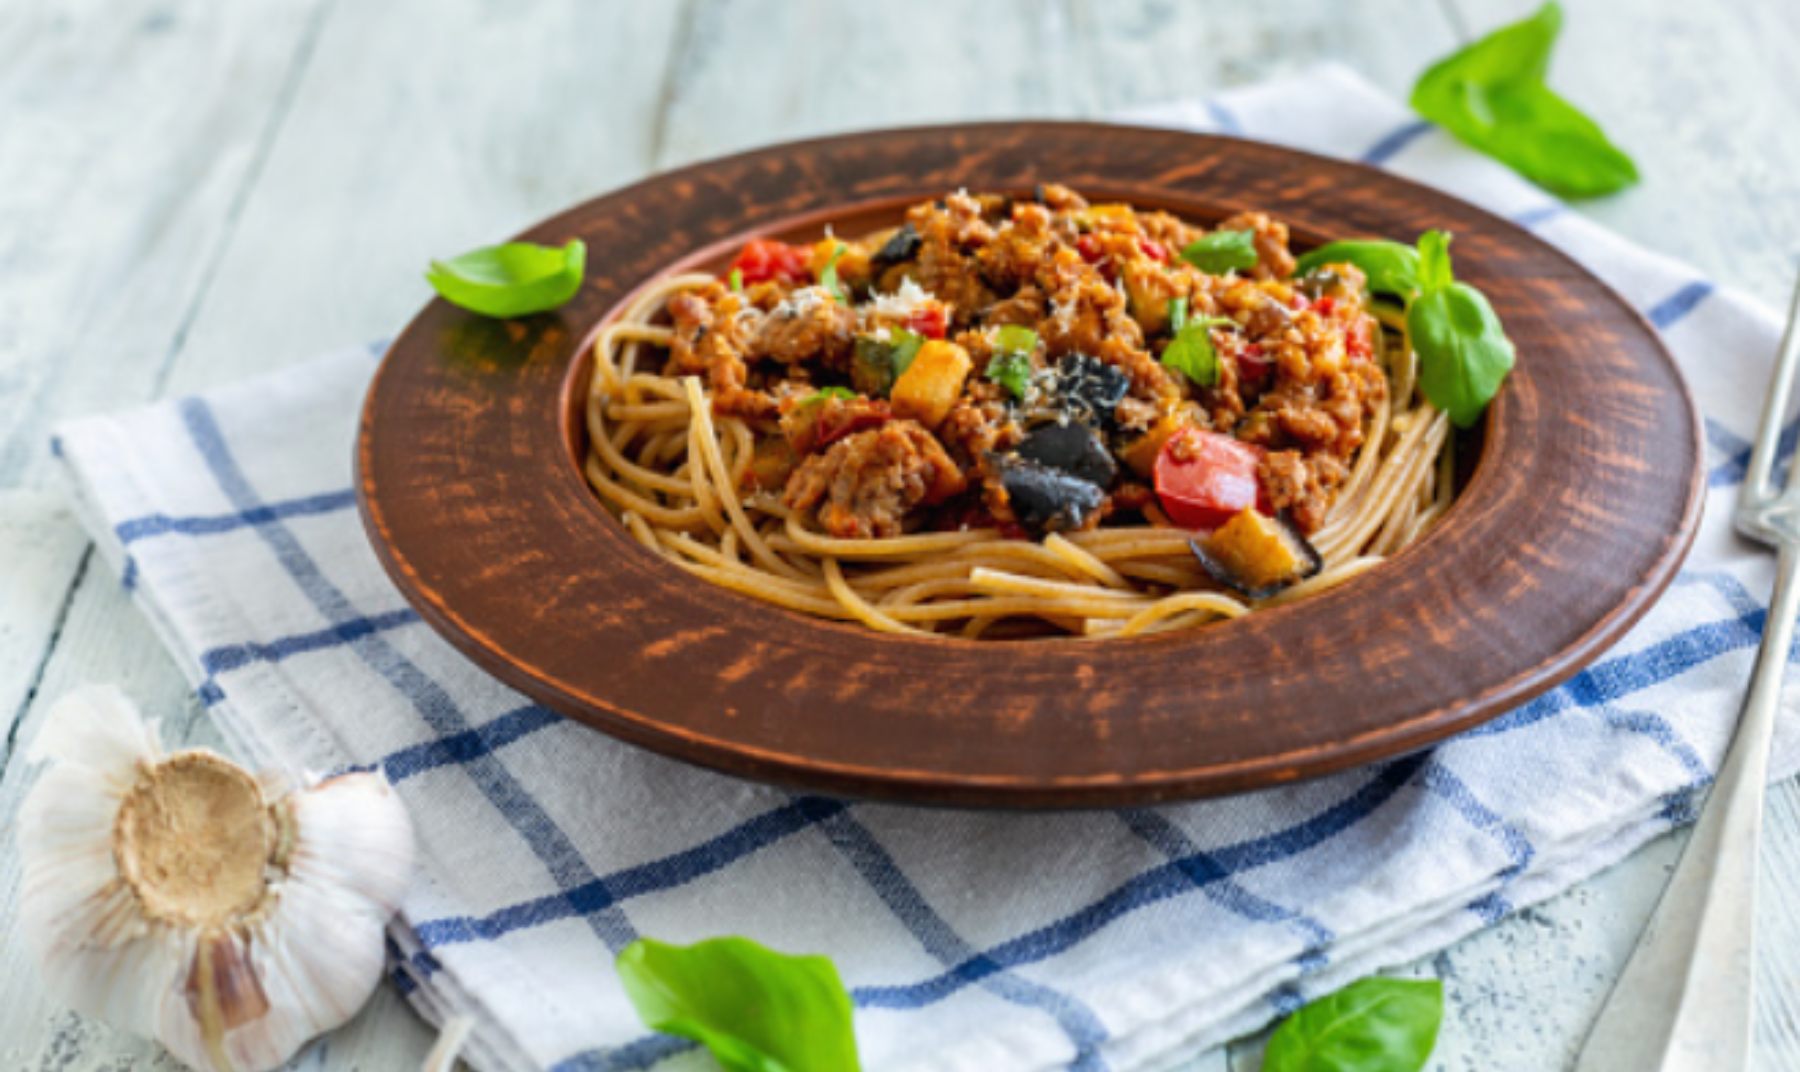 Espaguetis con salsa de berenjena, receta original y saludable de pasta 4